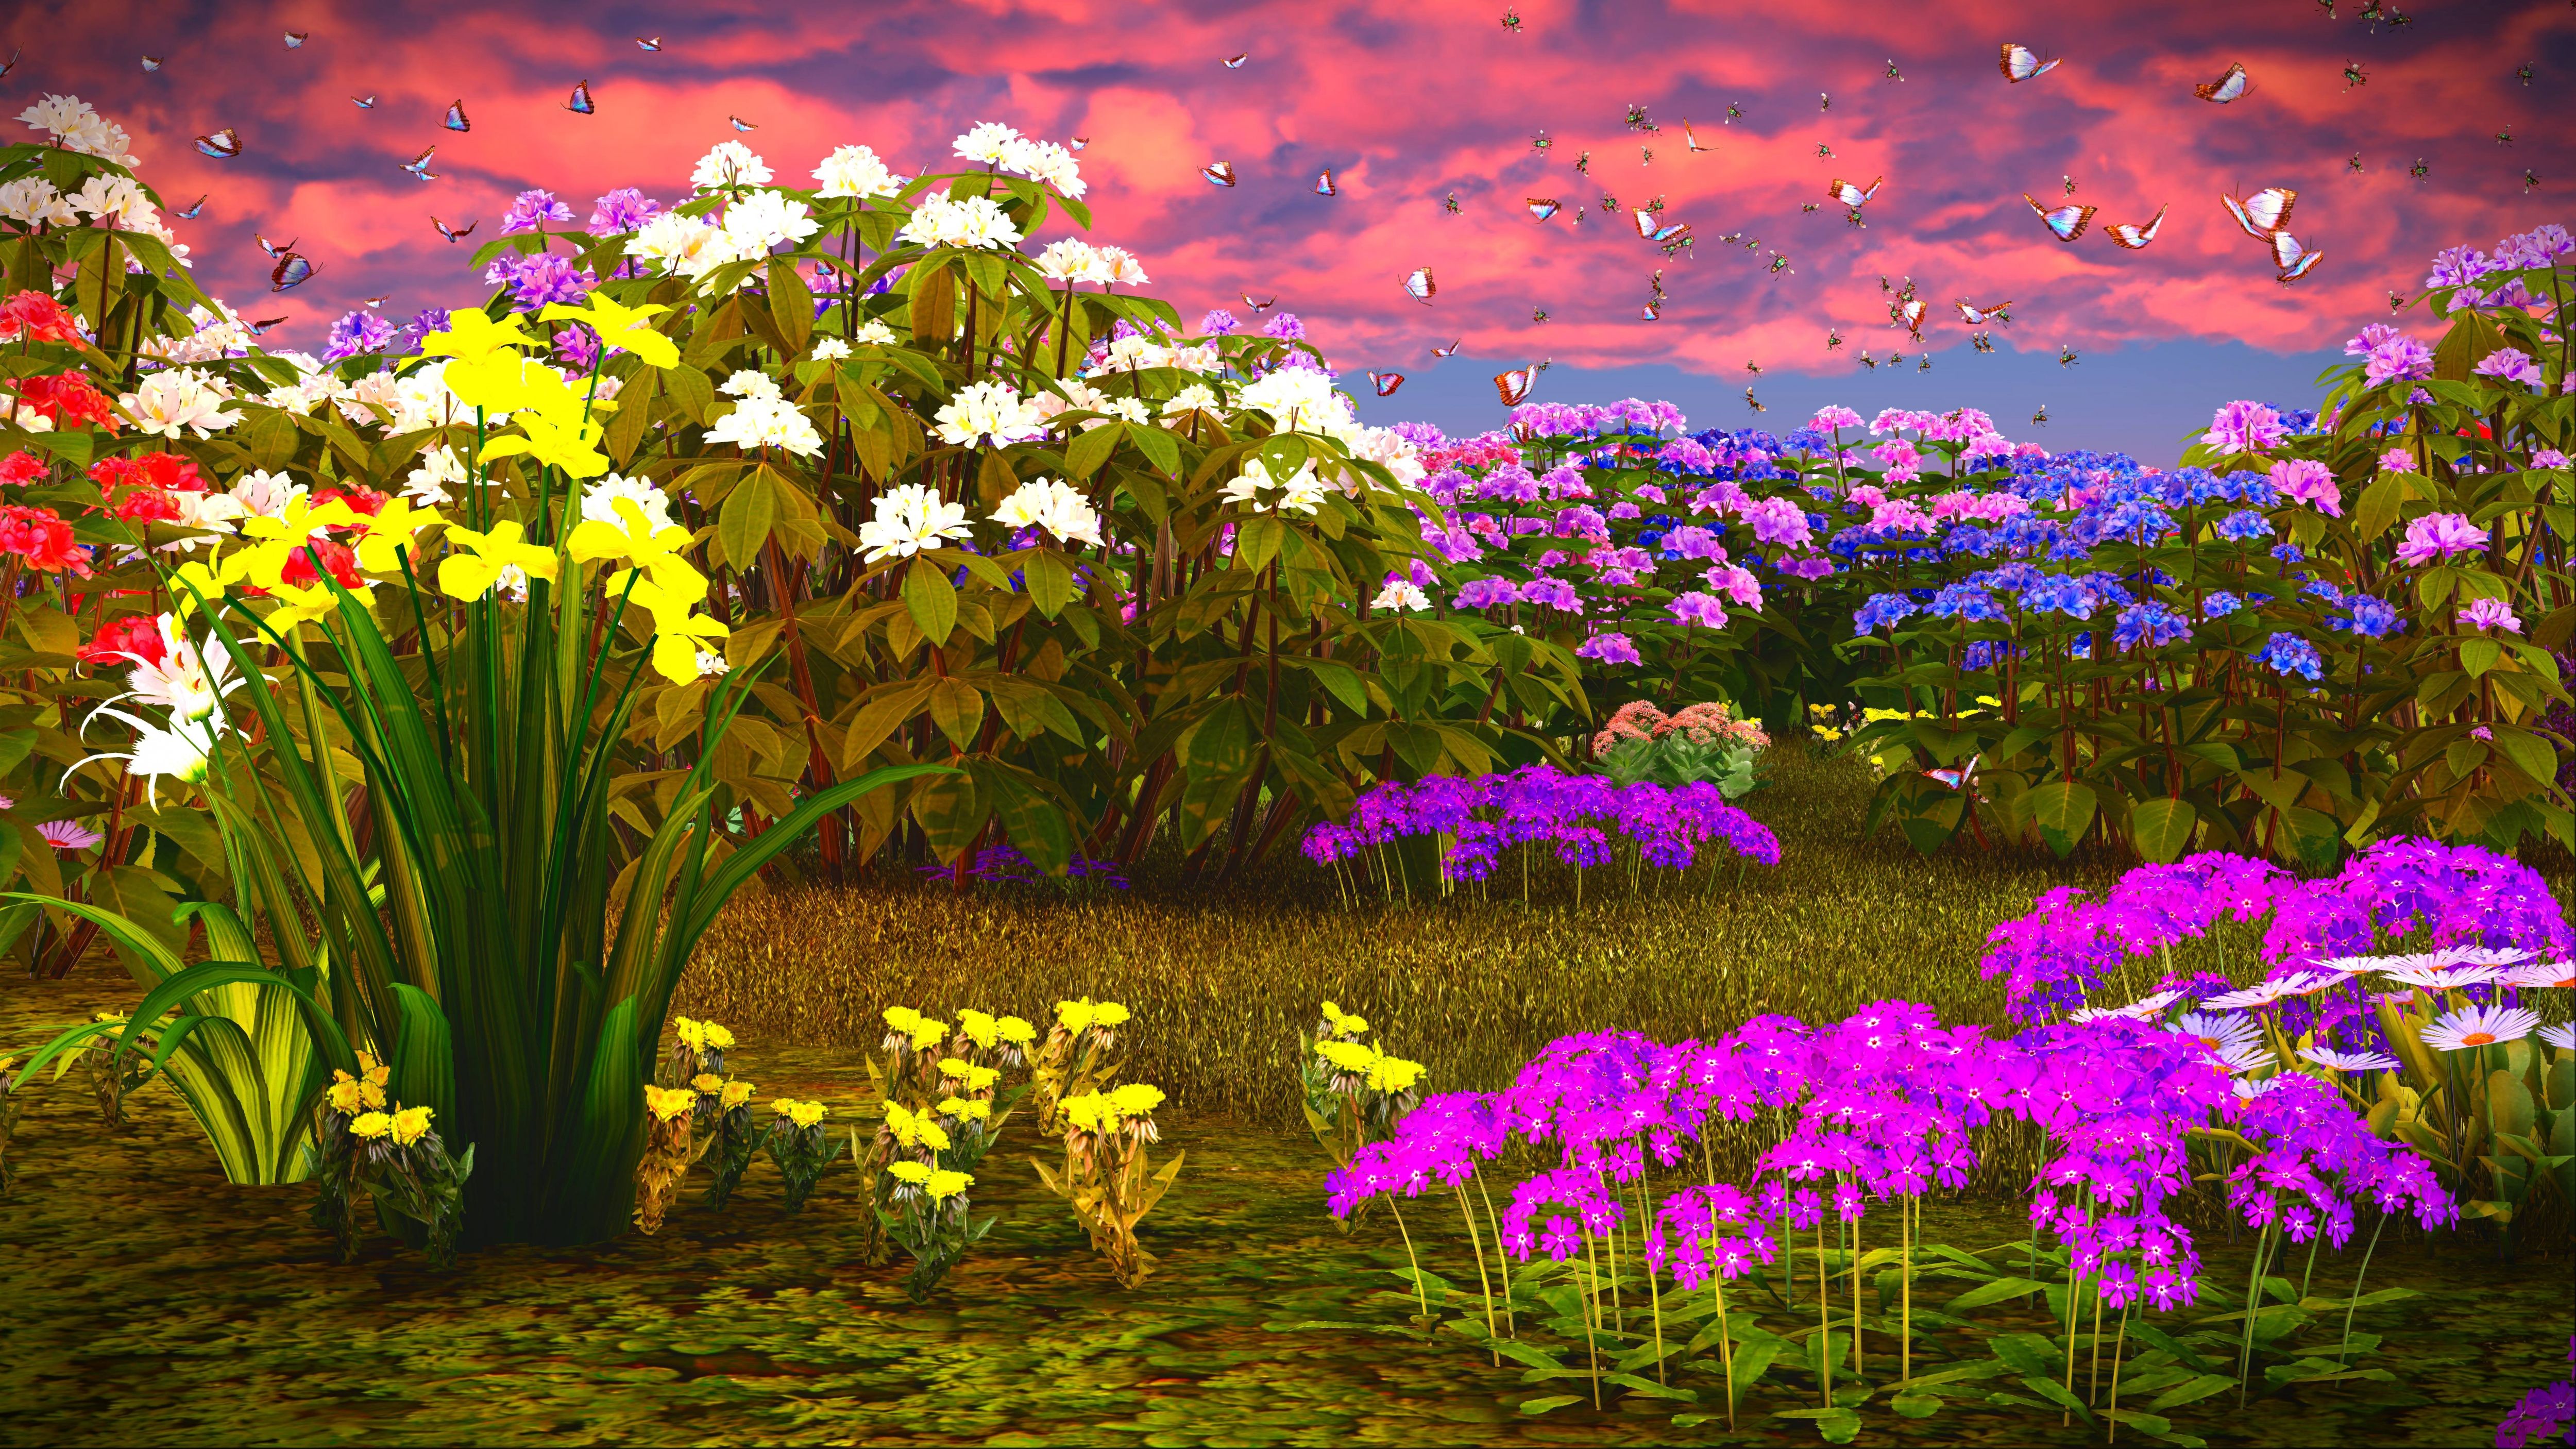 Fantasy Meadow 4k Ultra HD Wallpaper. Background Image